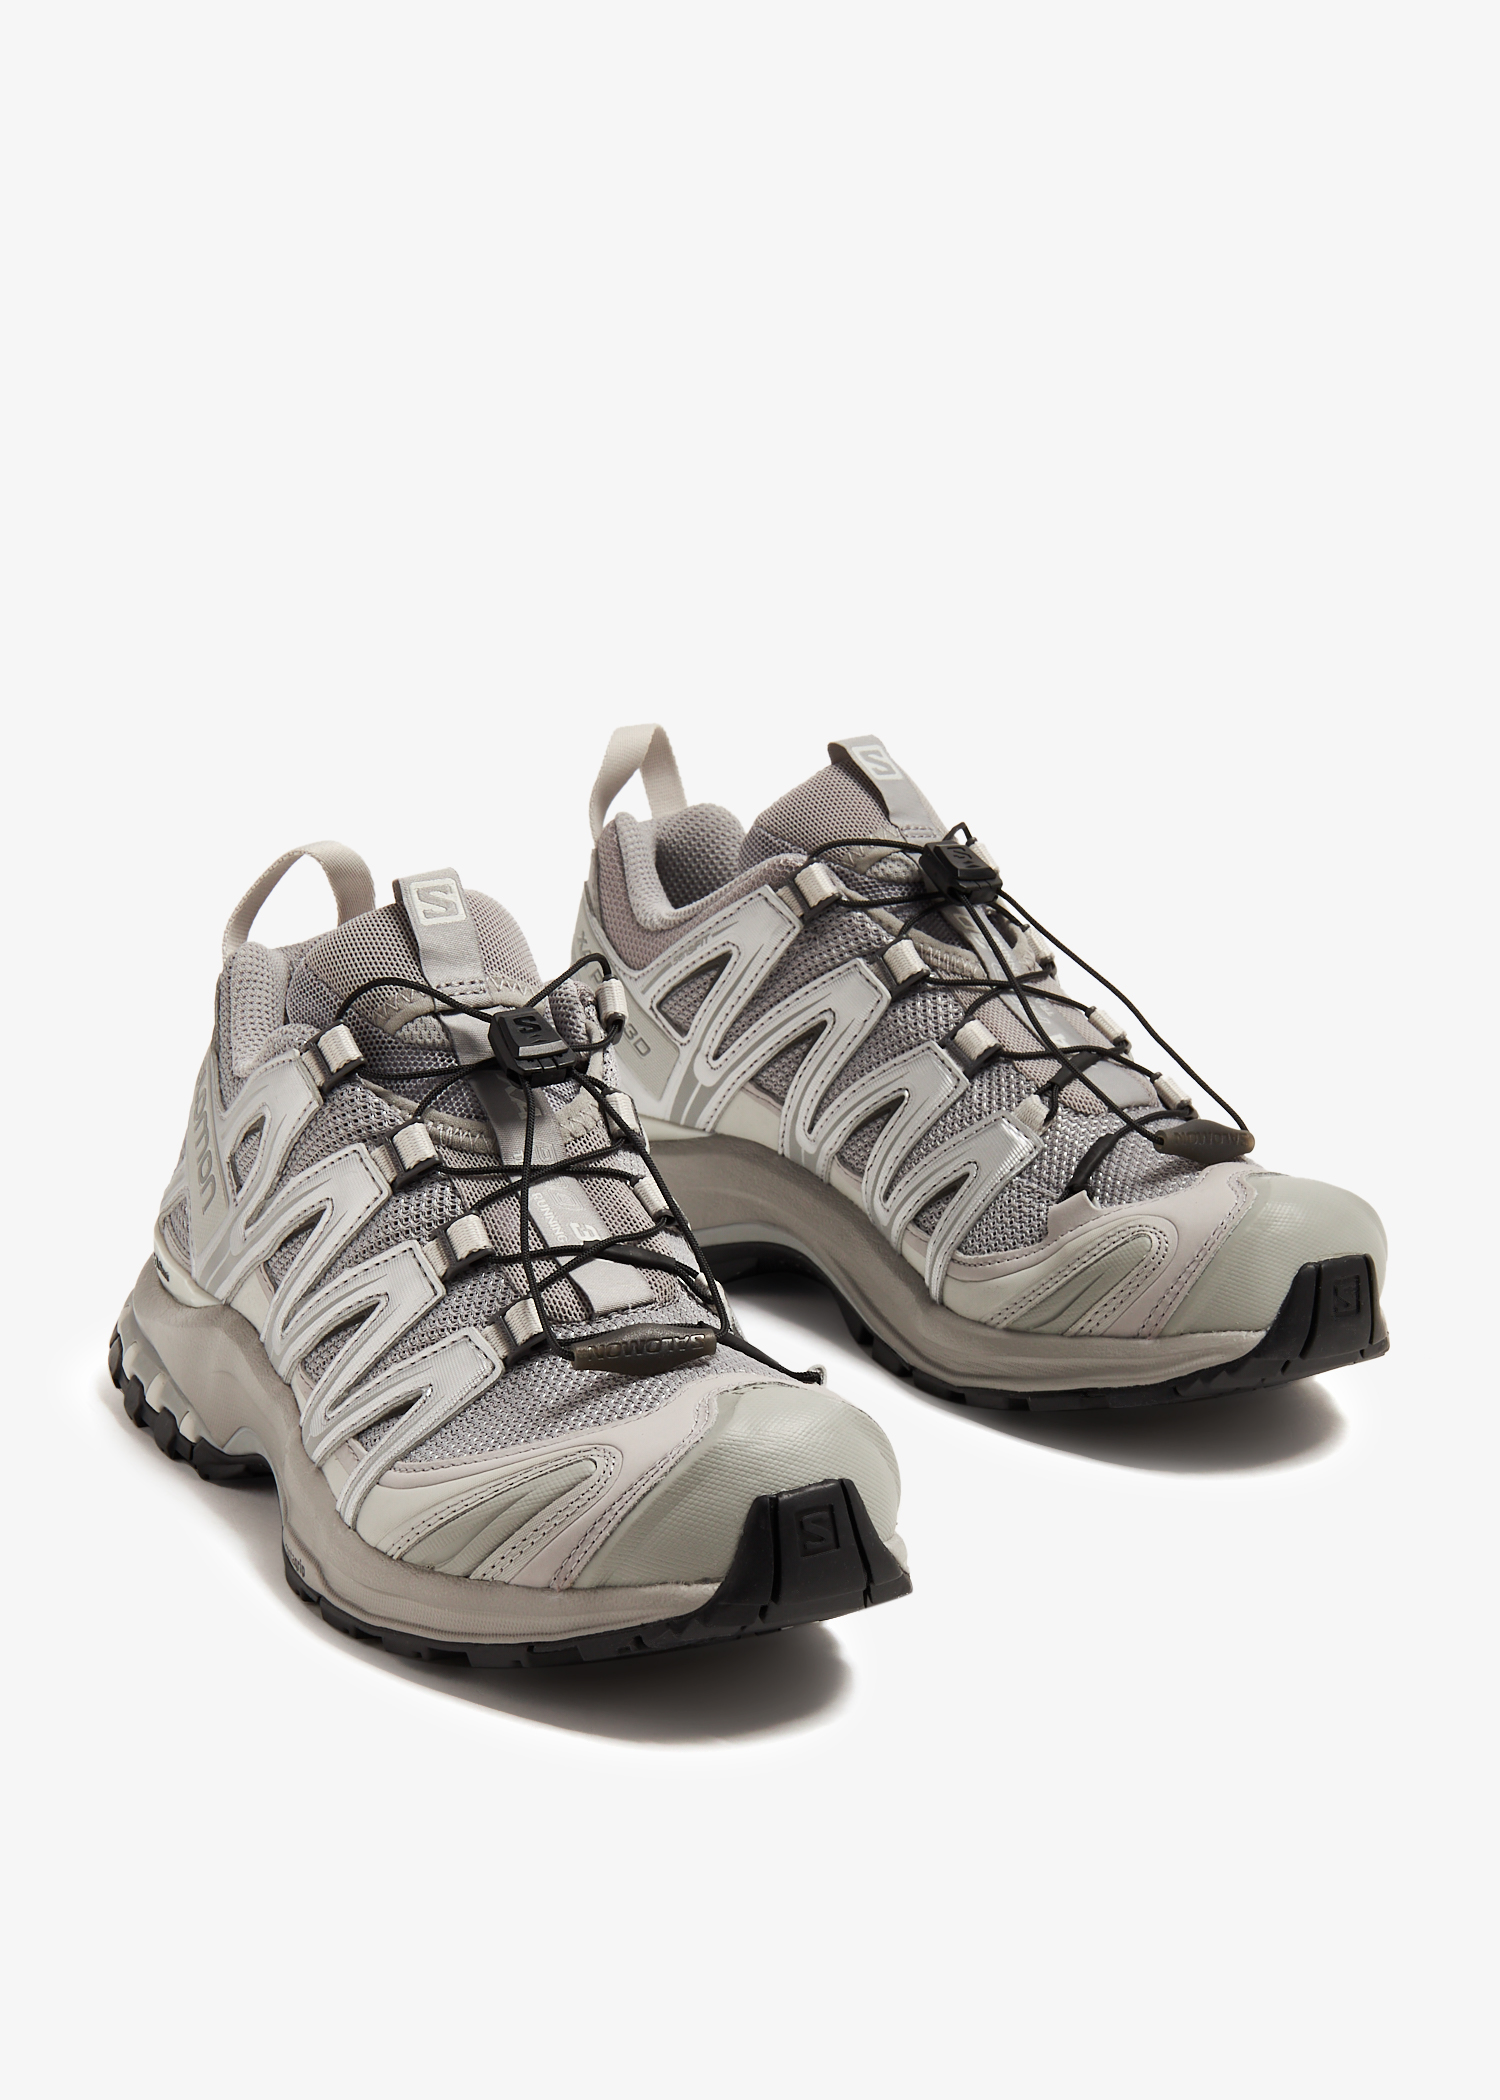 Salomon XA PRO 3D sneakers for Women - Grey in UAE | Level Shoes